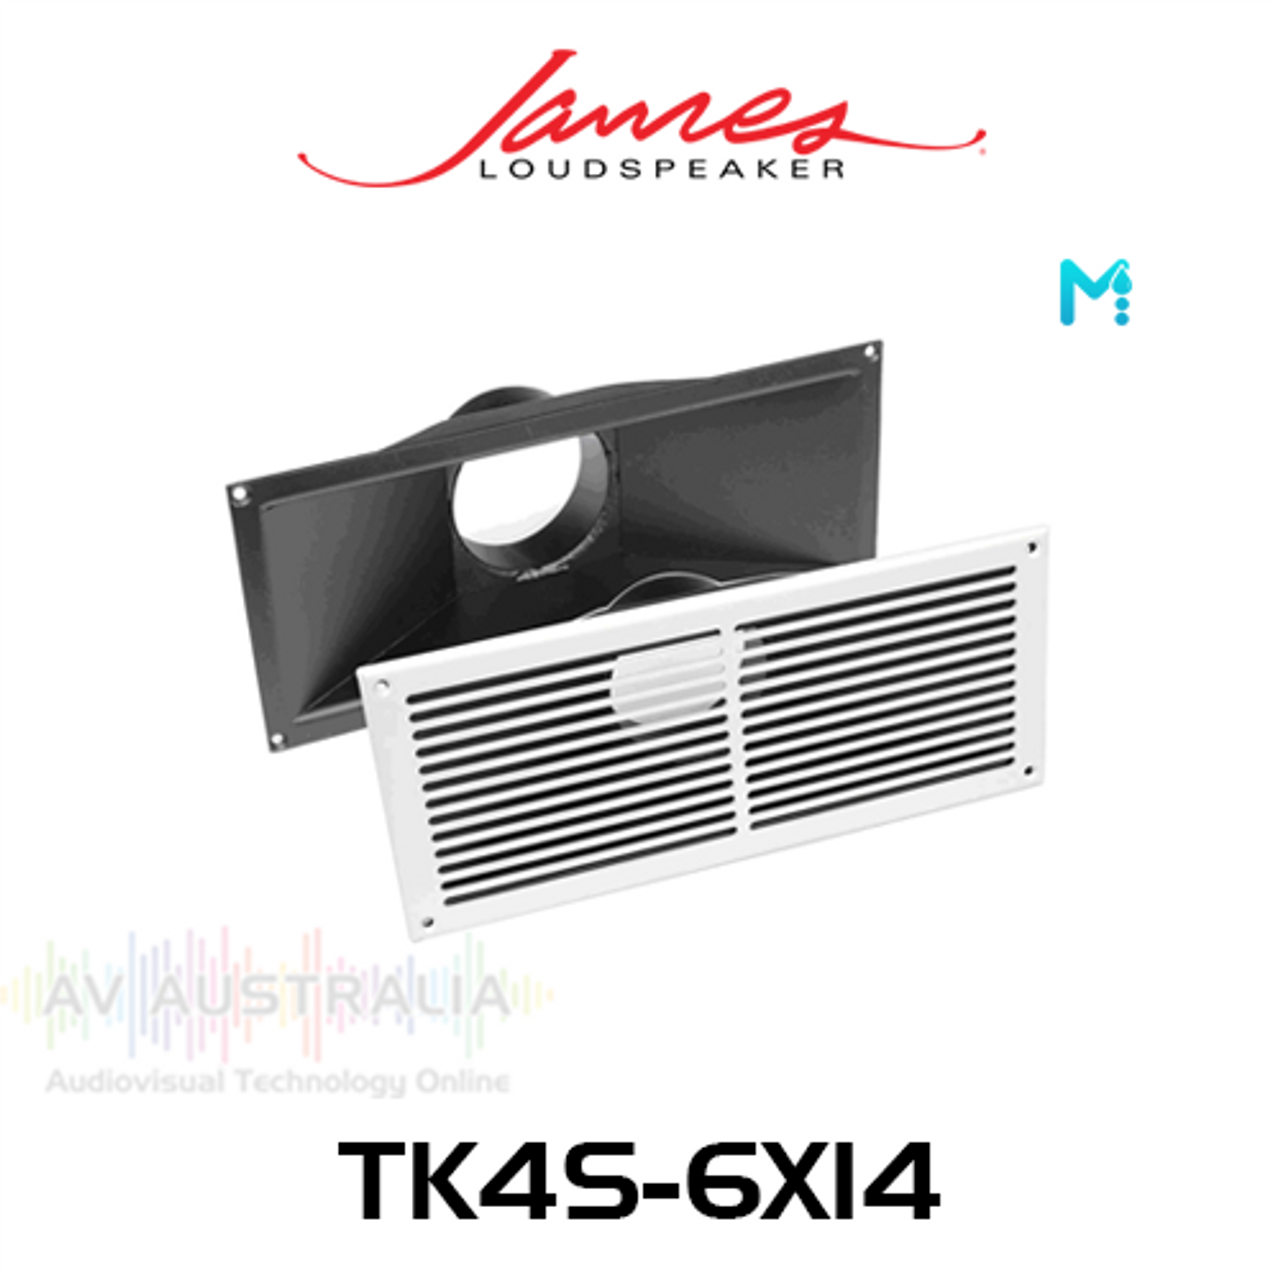 James Loudspeaker TK4S-6X14 6" x 14" HVAC Vent For 4" Flexible Duct Tube